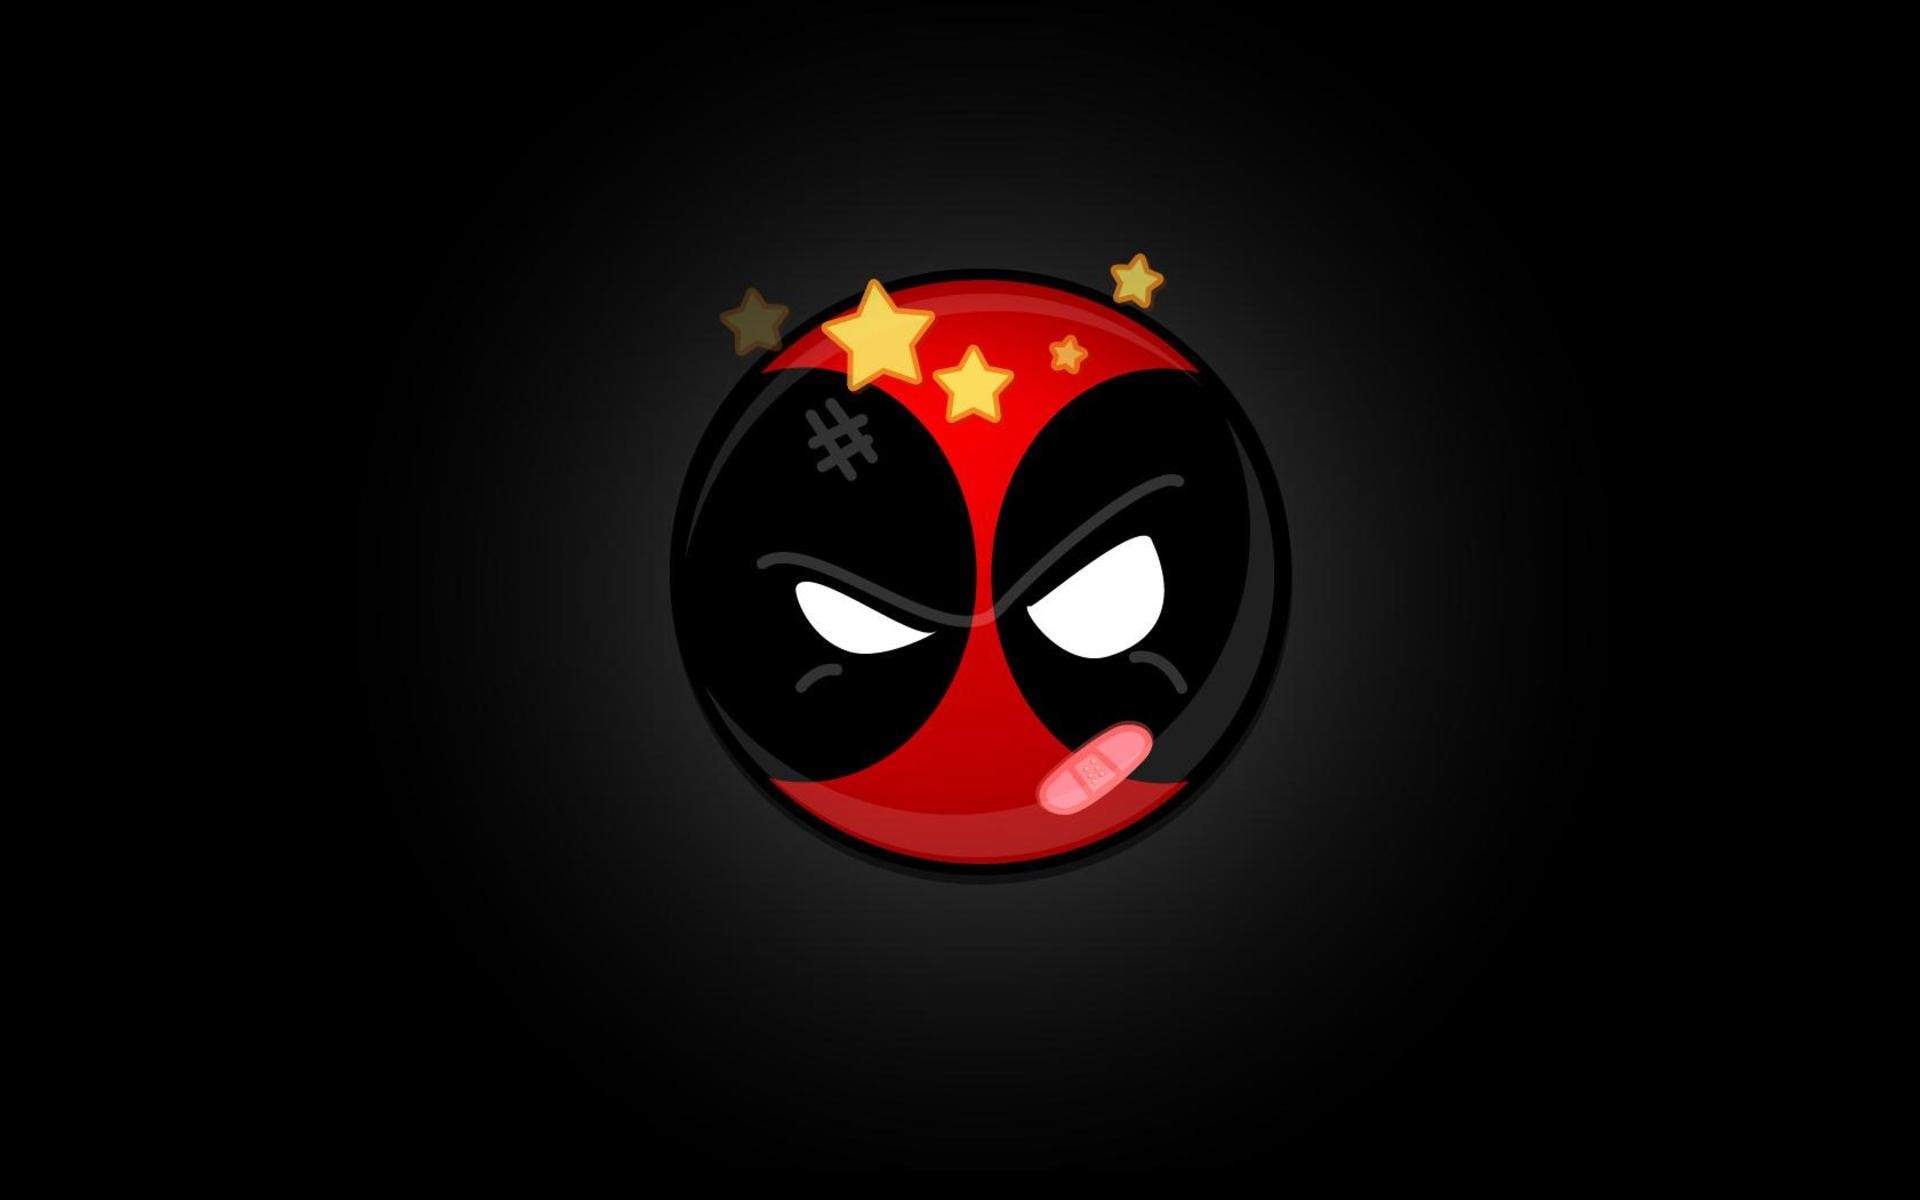 Deadpool Logo Icon wallpaper HD. Free desktop background 2016 in